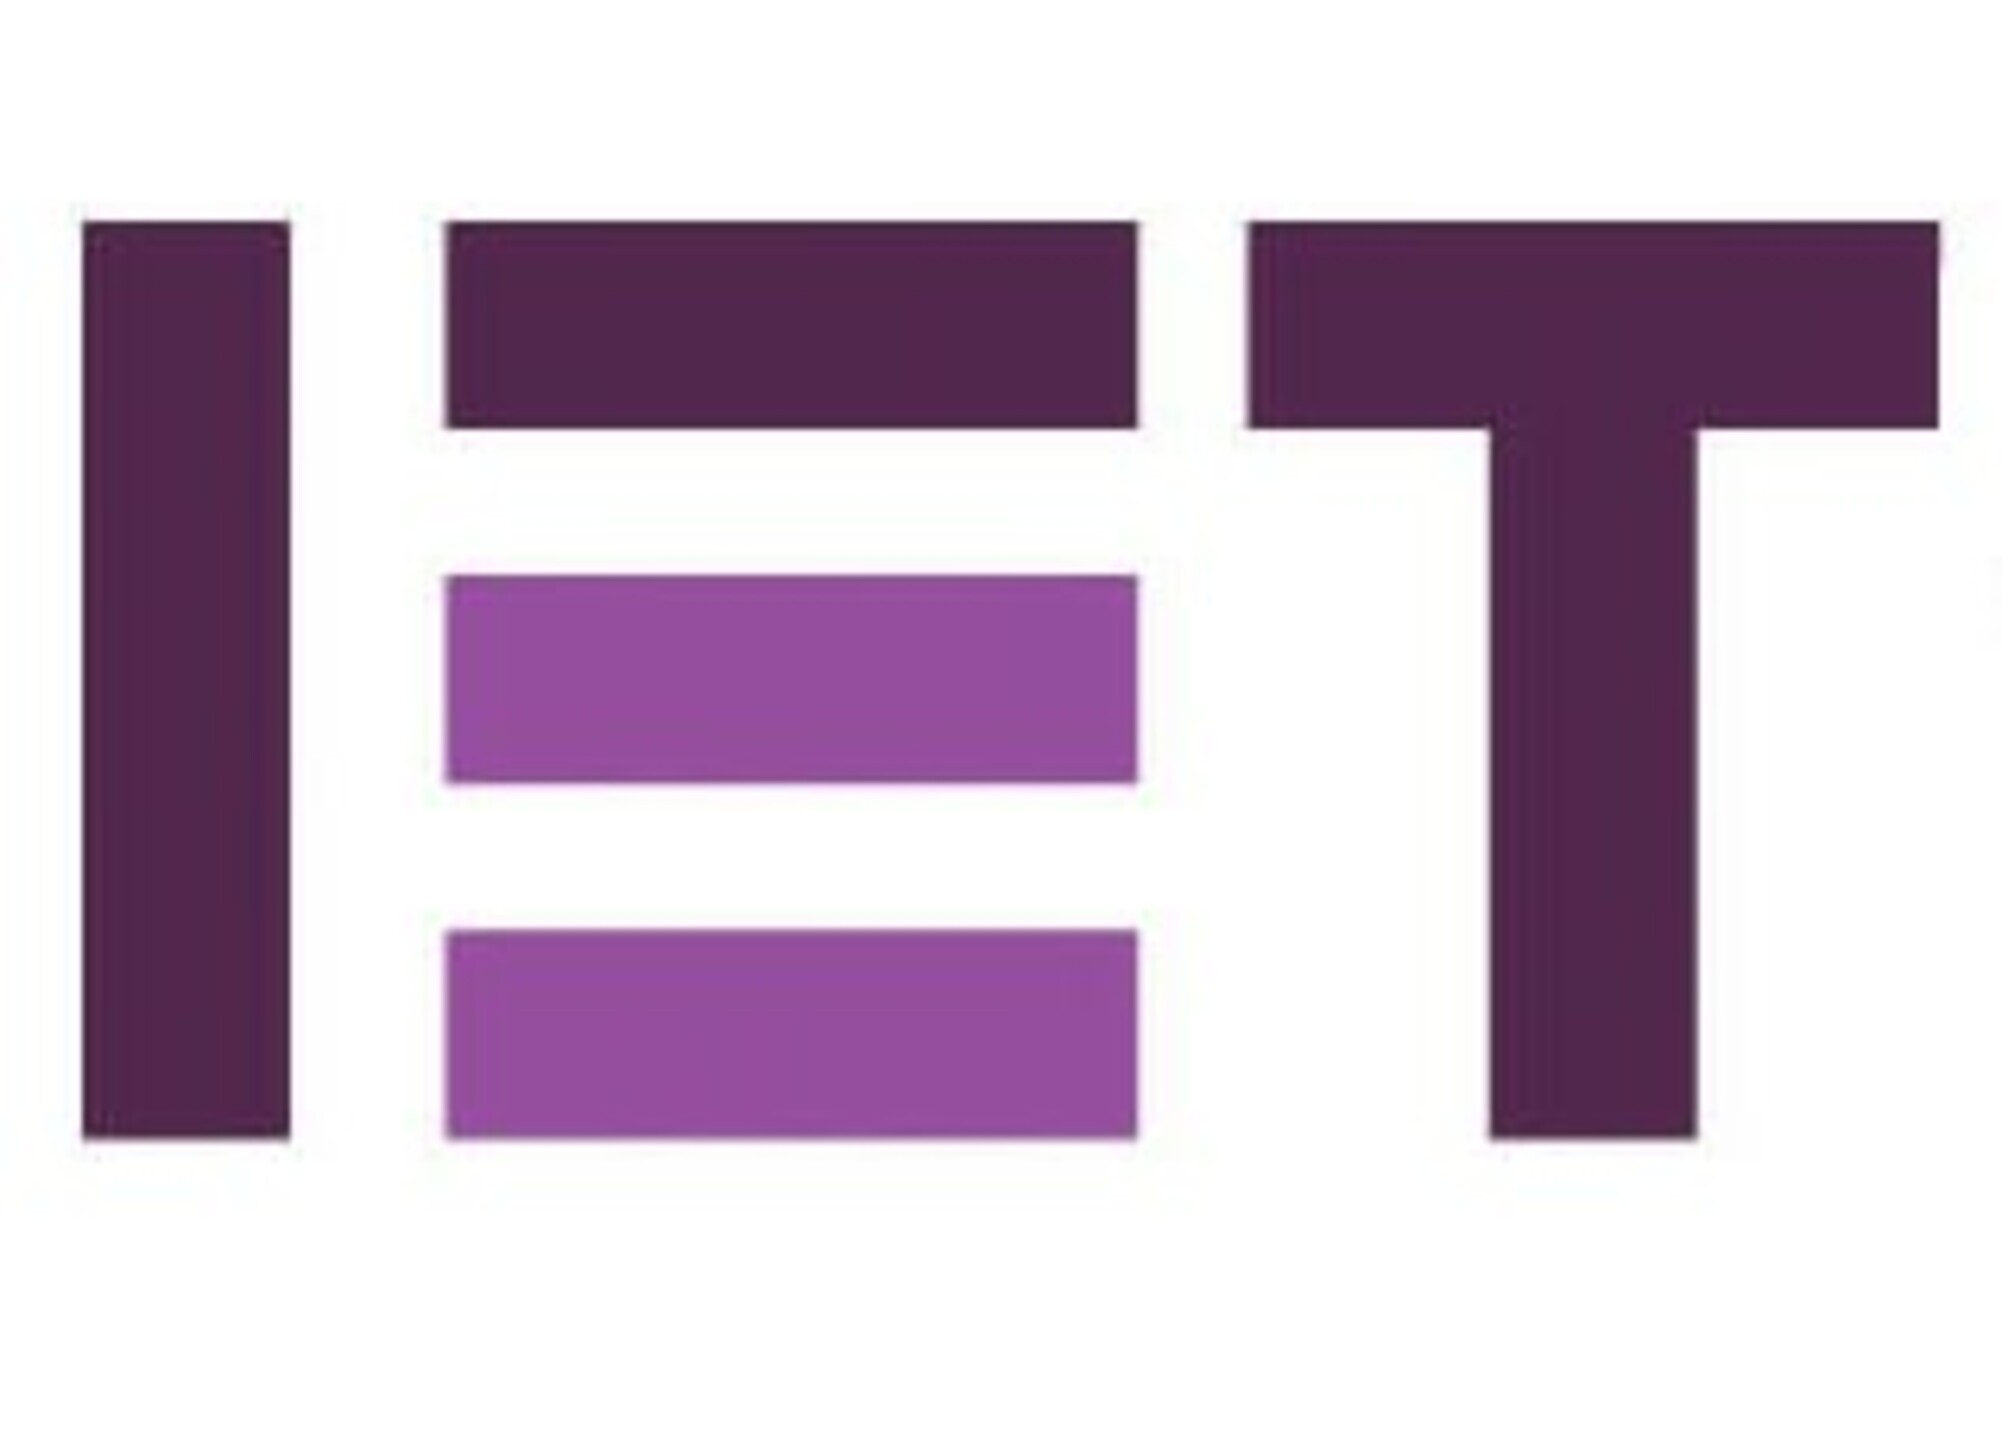 Iet logo crop